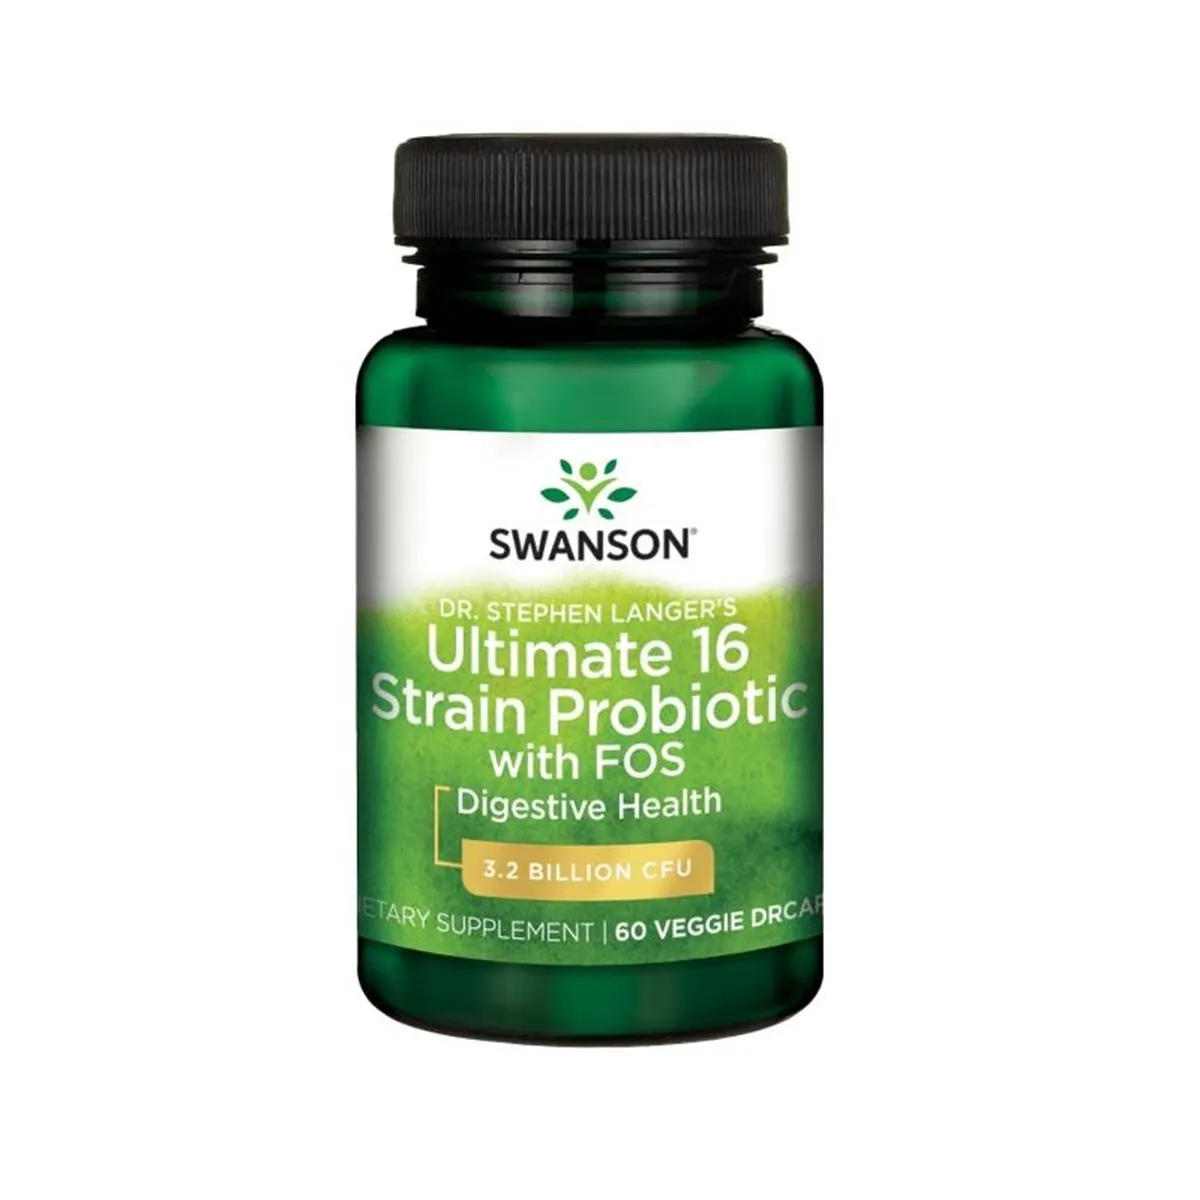 Swanson, Probiotyk 16 szczepów z FOS, suplement diety, 60 kapsułek